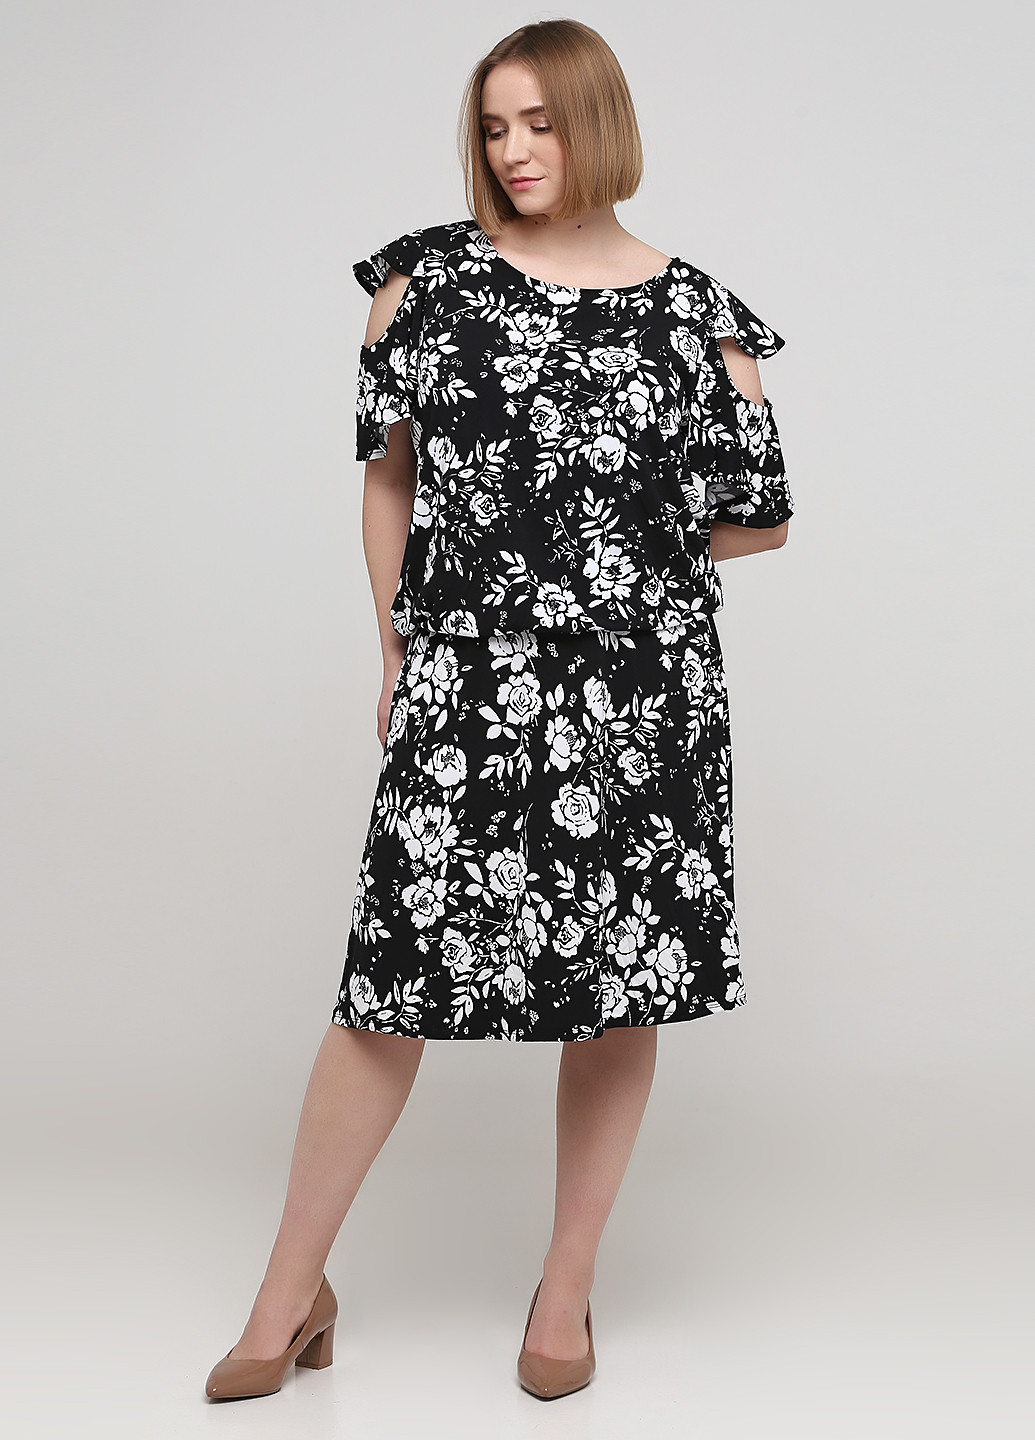 Черно-белая кэжуал цветочной расцветки юбка Avon а-силуэта (трапеция)